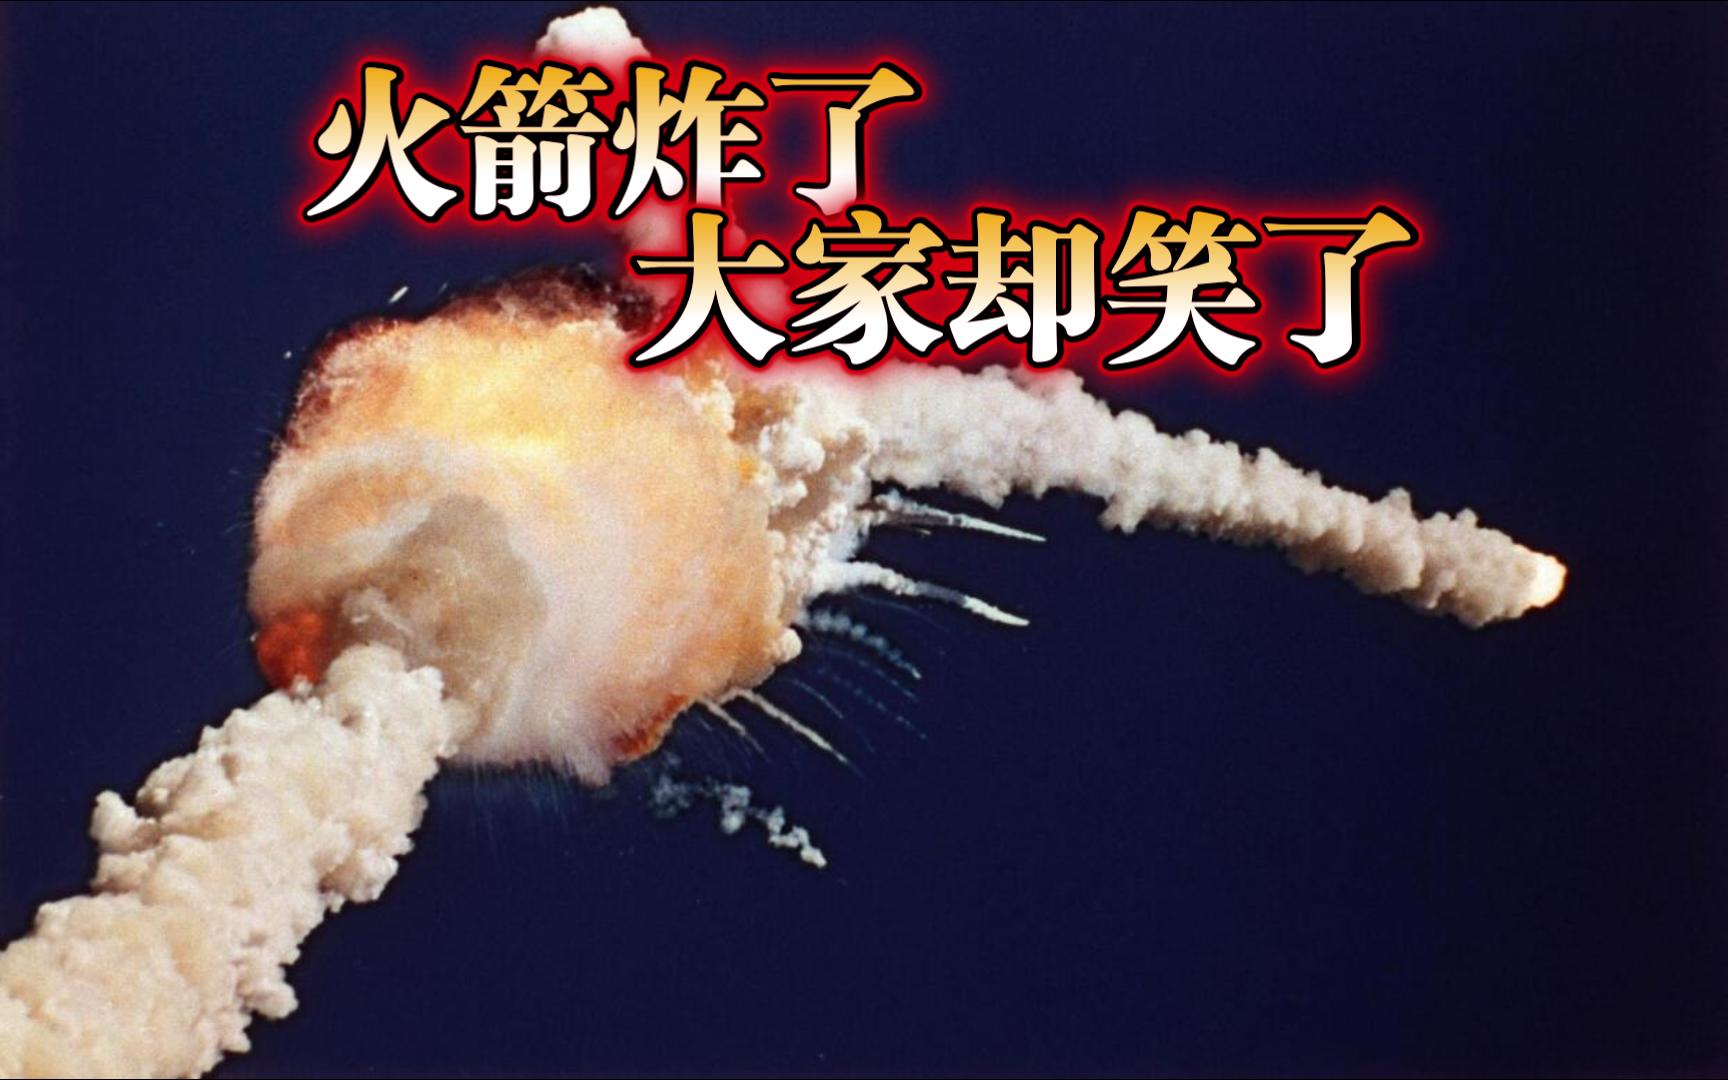 火箭弹爆炸图片图片